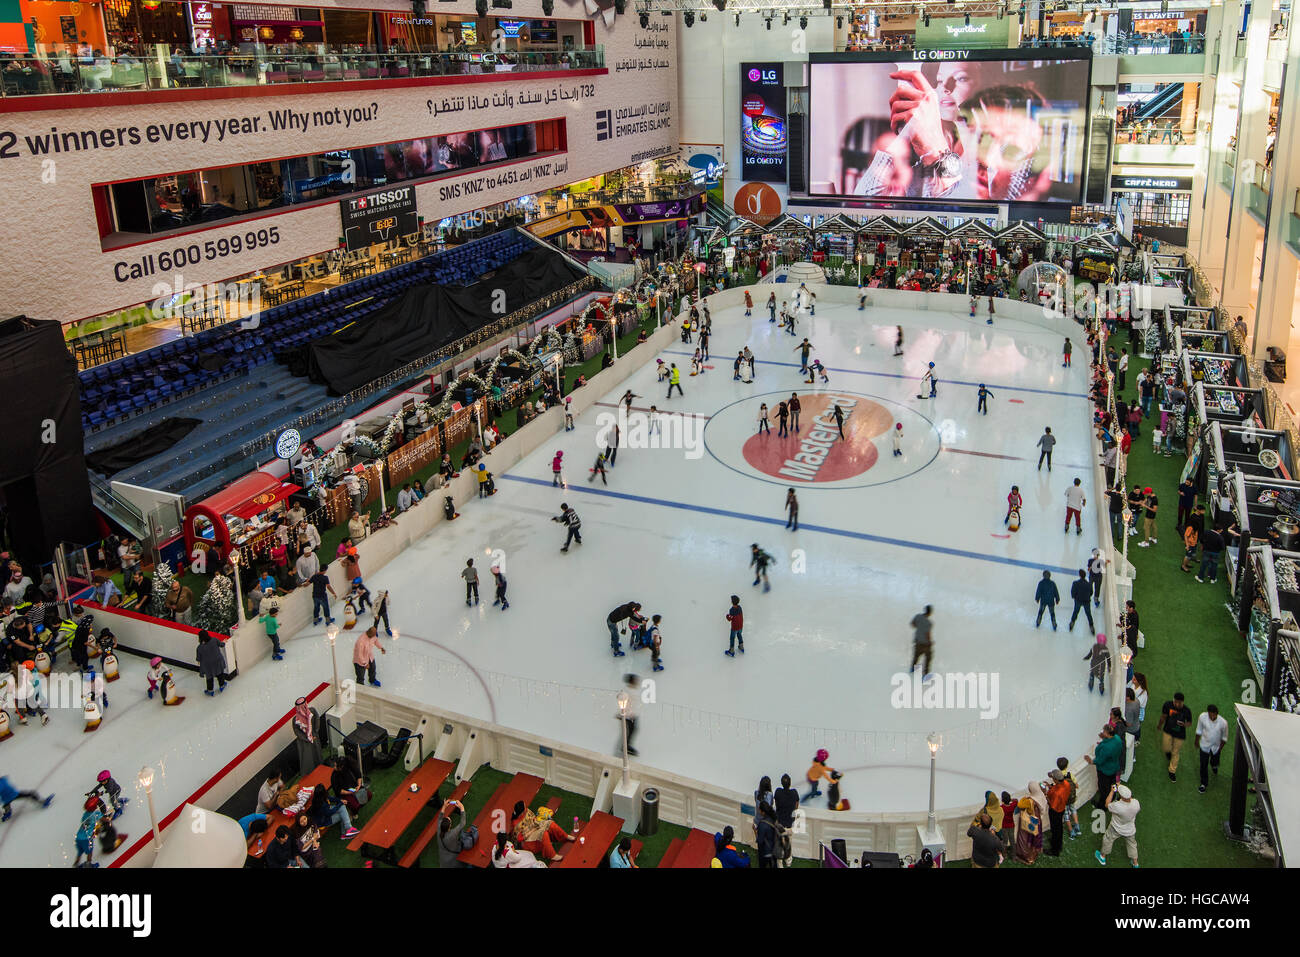 Ssurvivor: Dubai Mall Skating Rink